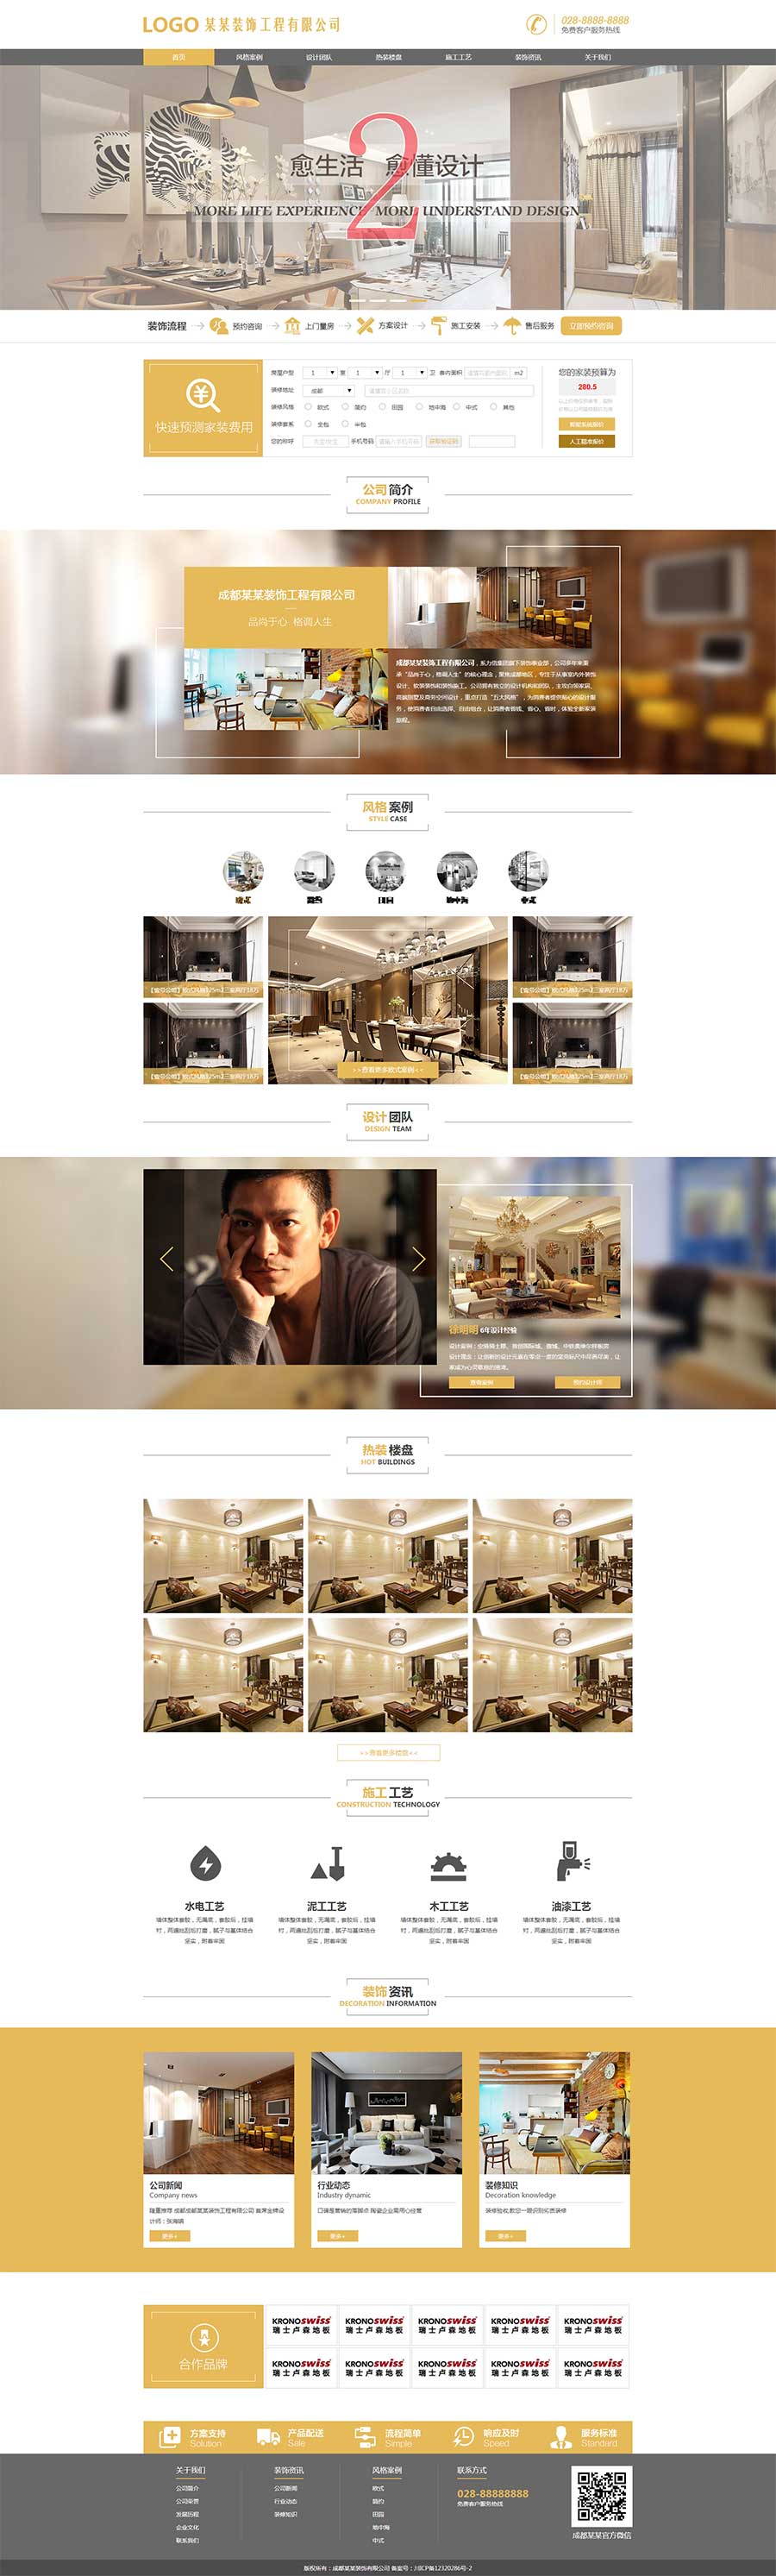 html金黄色大气室内装修装饰工程公司网站模板